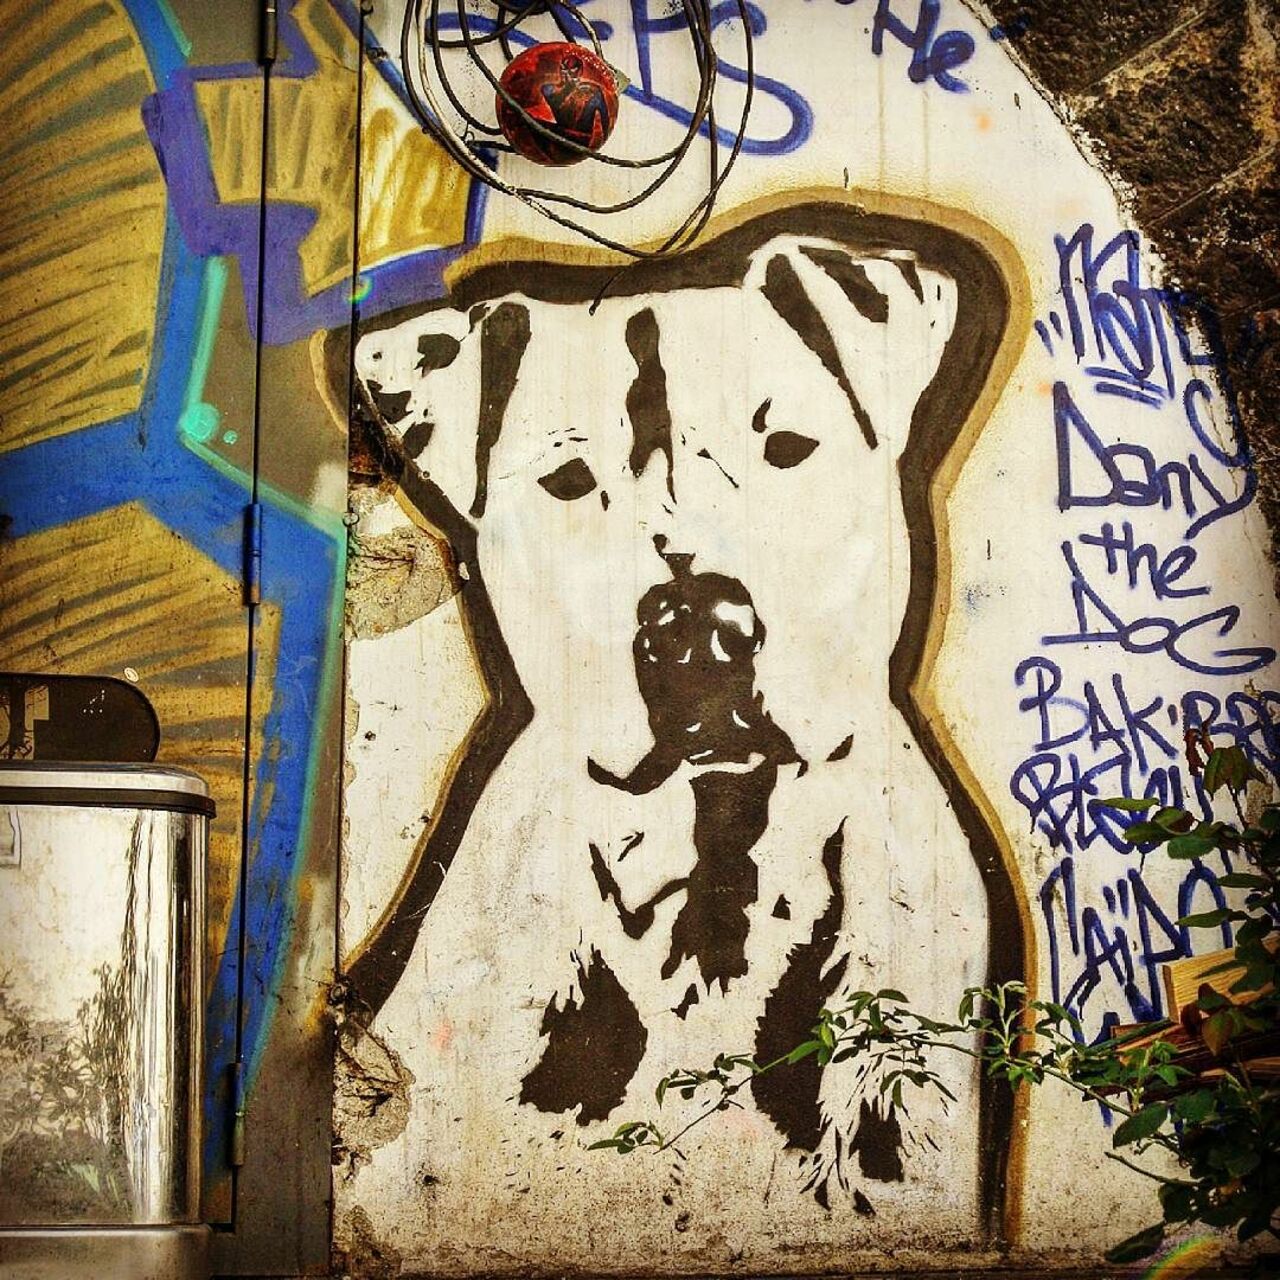 #Paris #graffiti photo by @fbgdes3culs http://ift.tt/1LPIhR7 #StreetArt https://t.co/PP7IfdIPVu